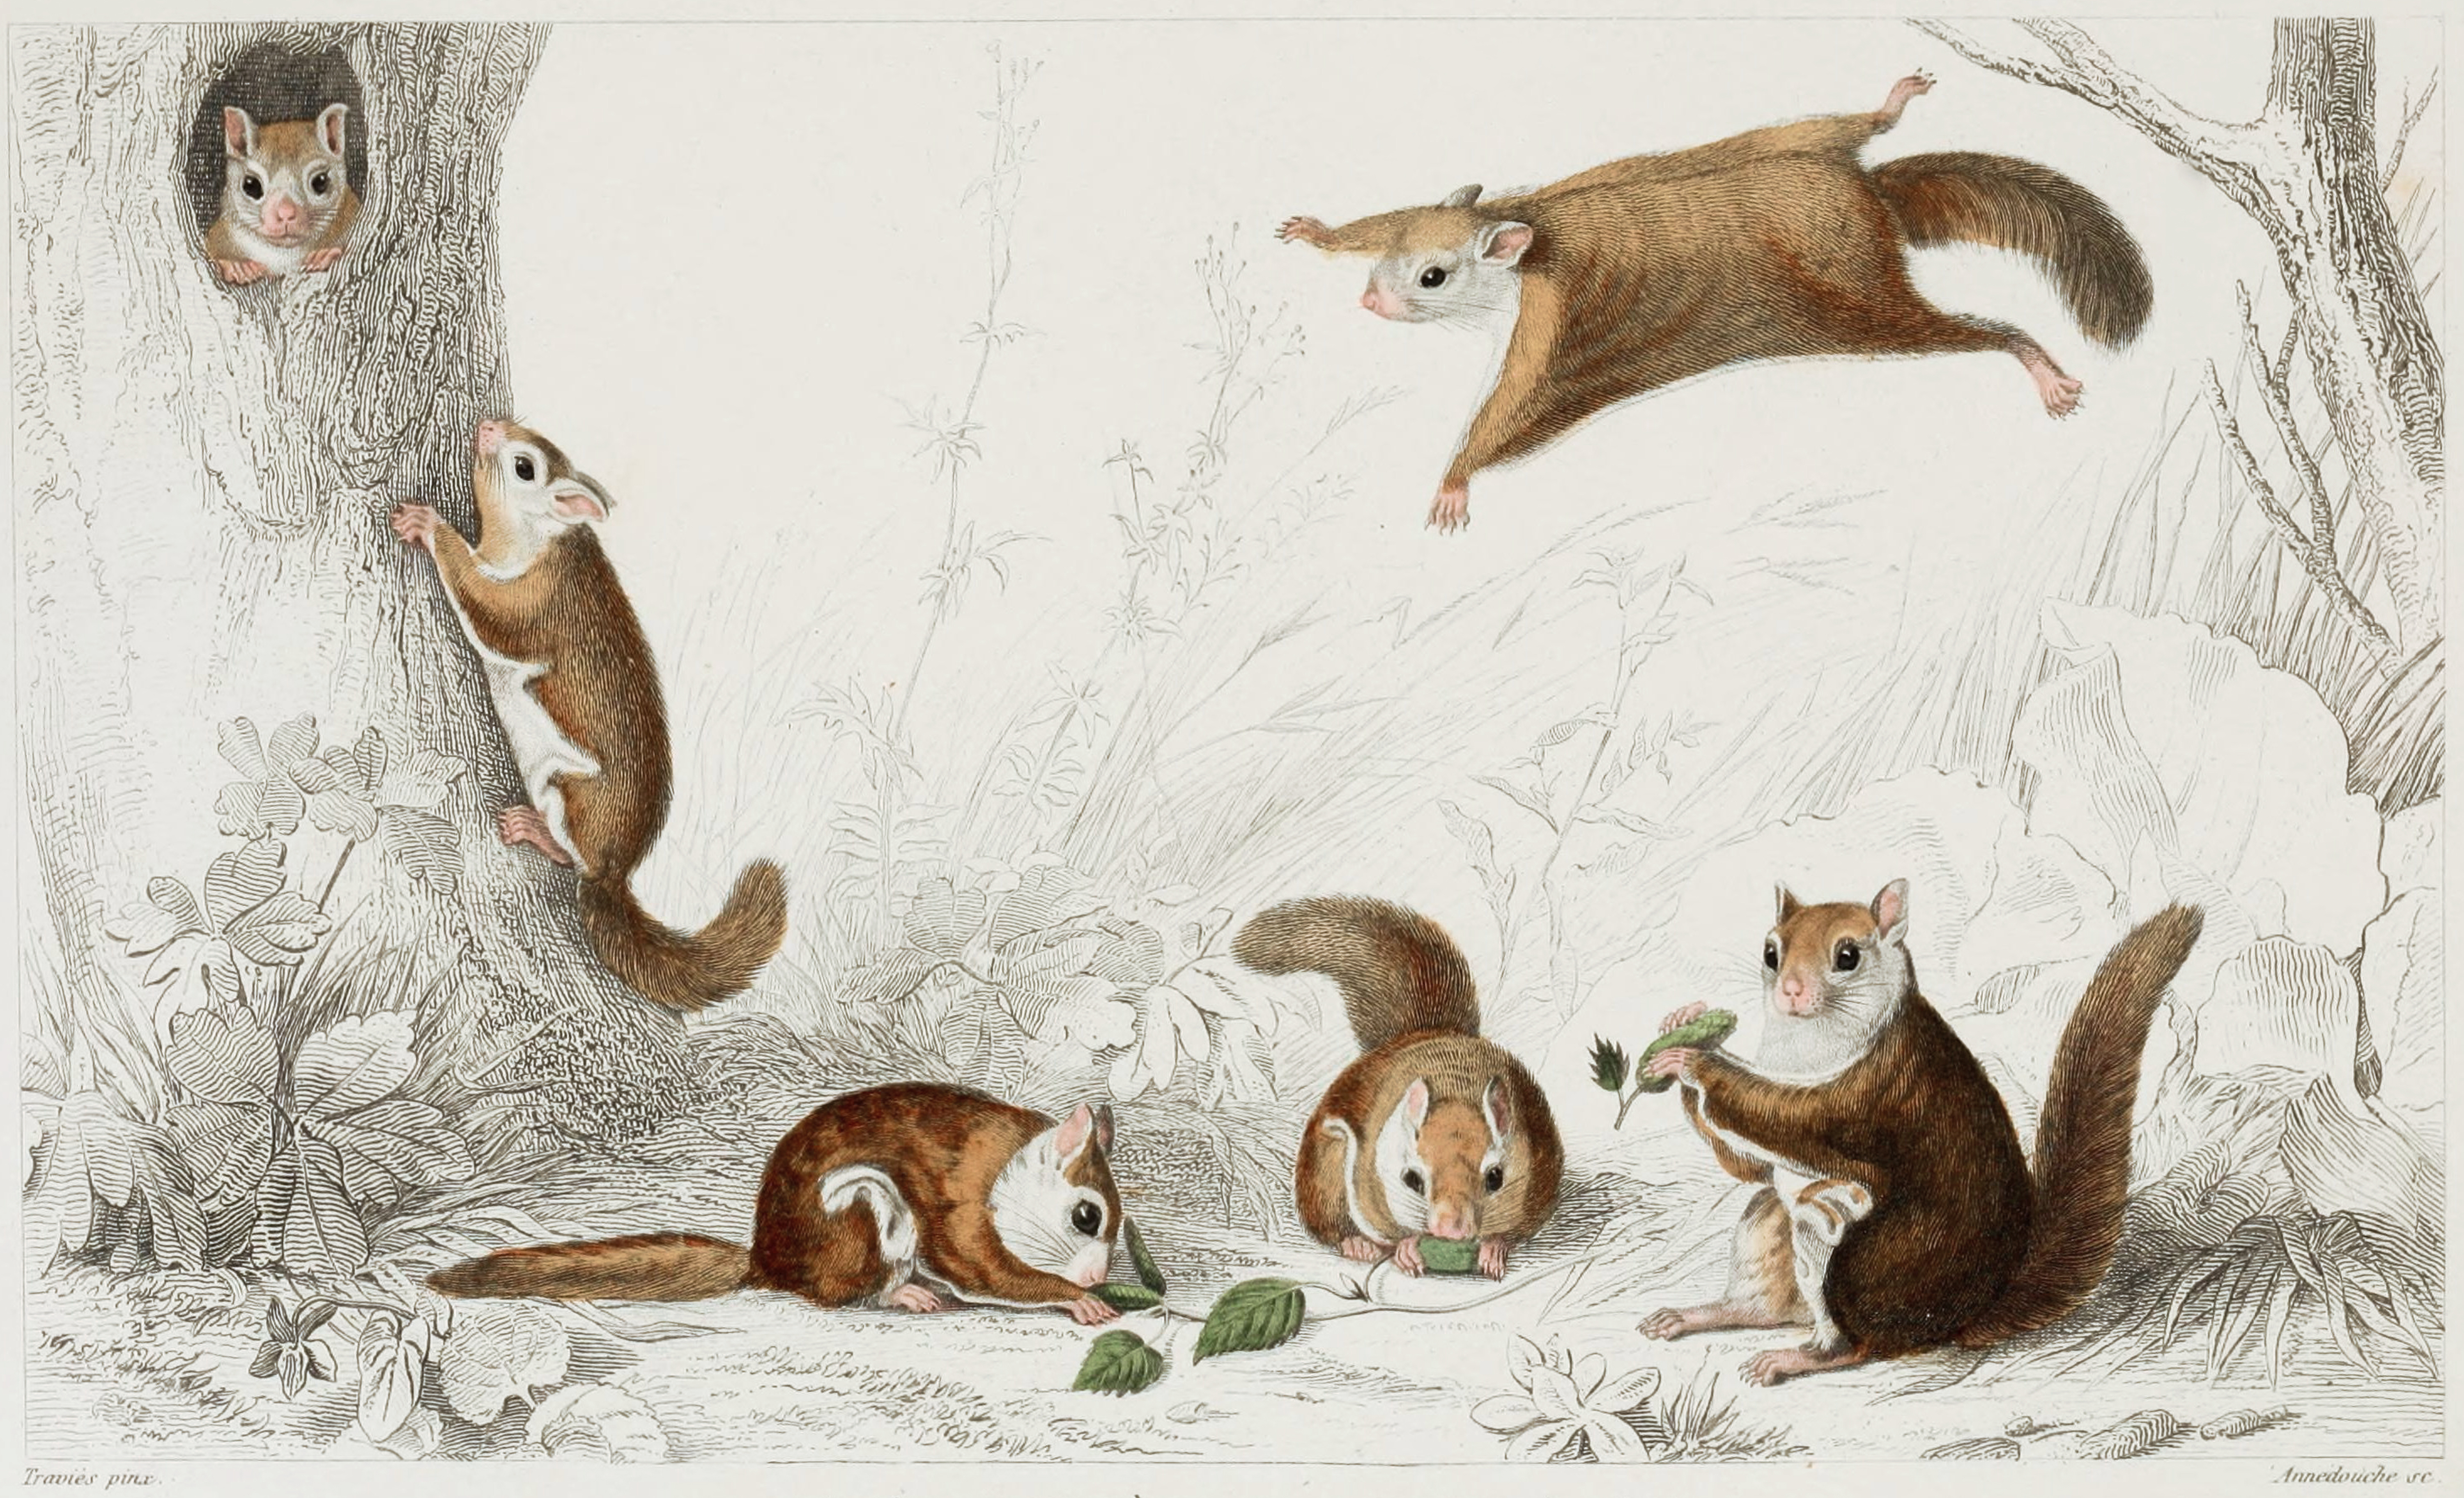 Squirrel illustration photo